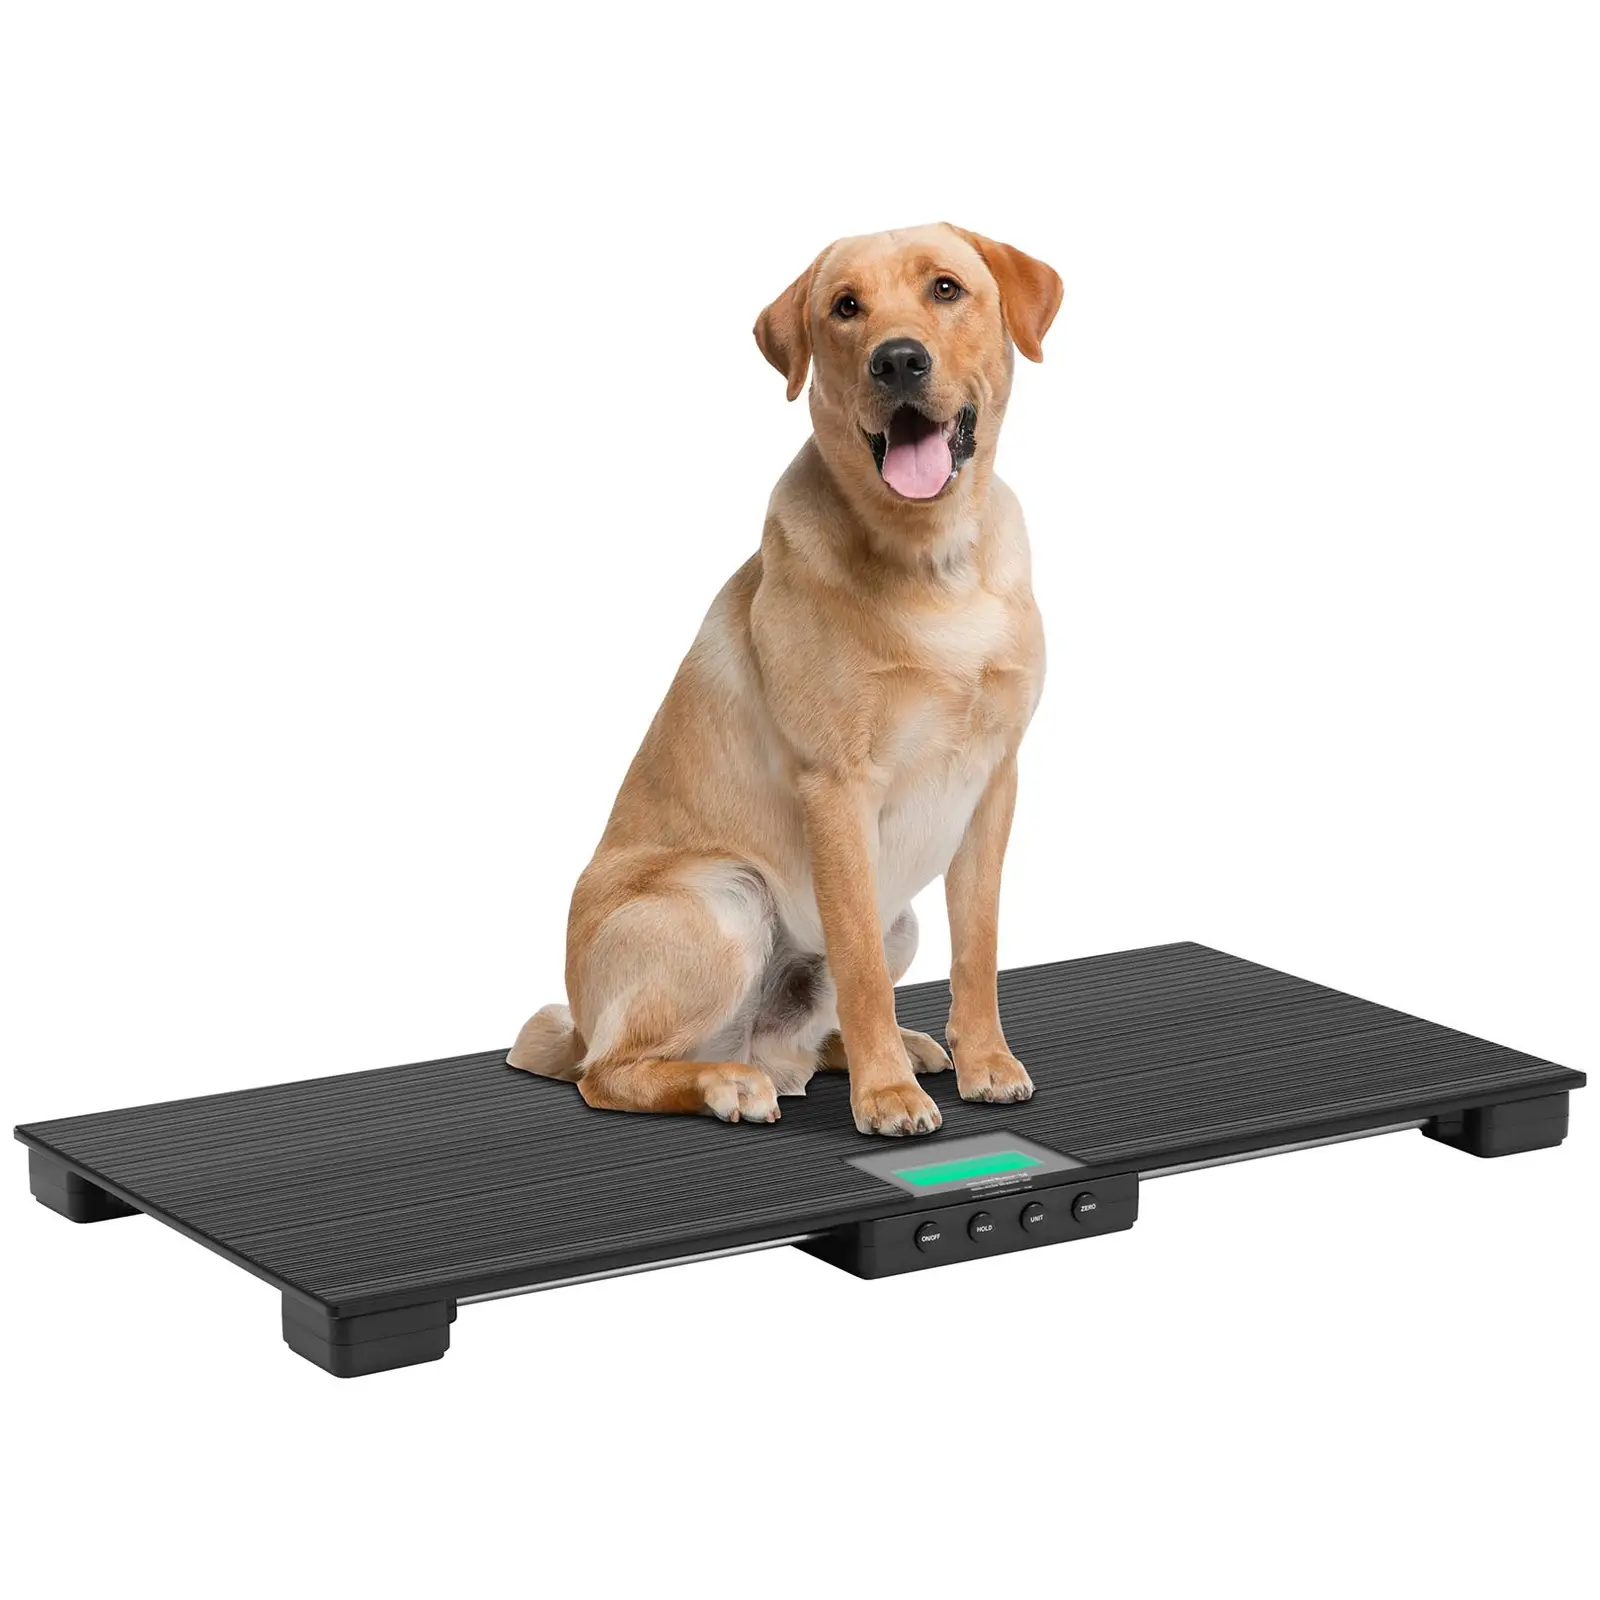 Váha na zvířata - 150 kg / 50 g - protiskluzová podložka - LCD displej